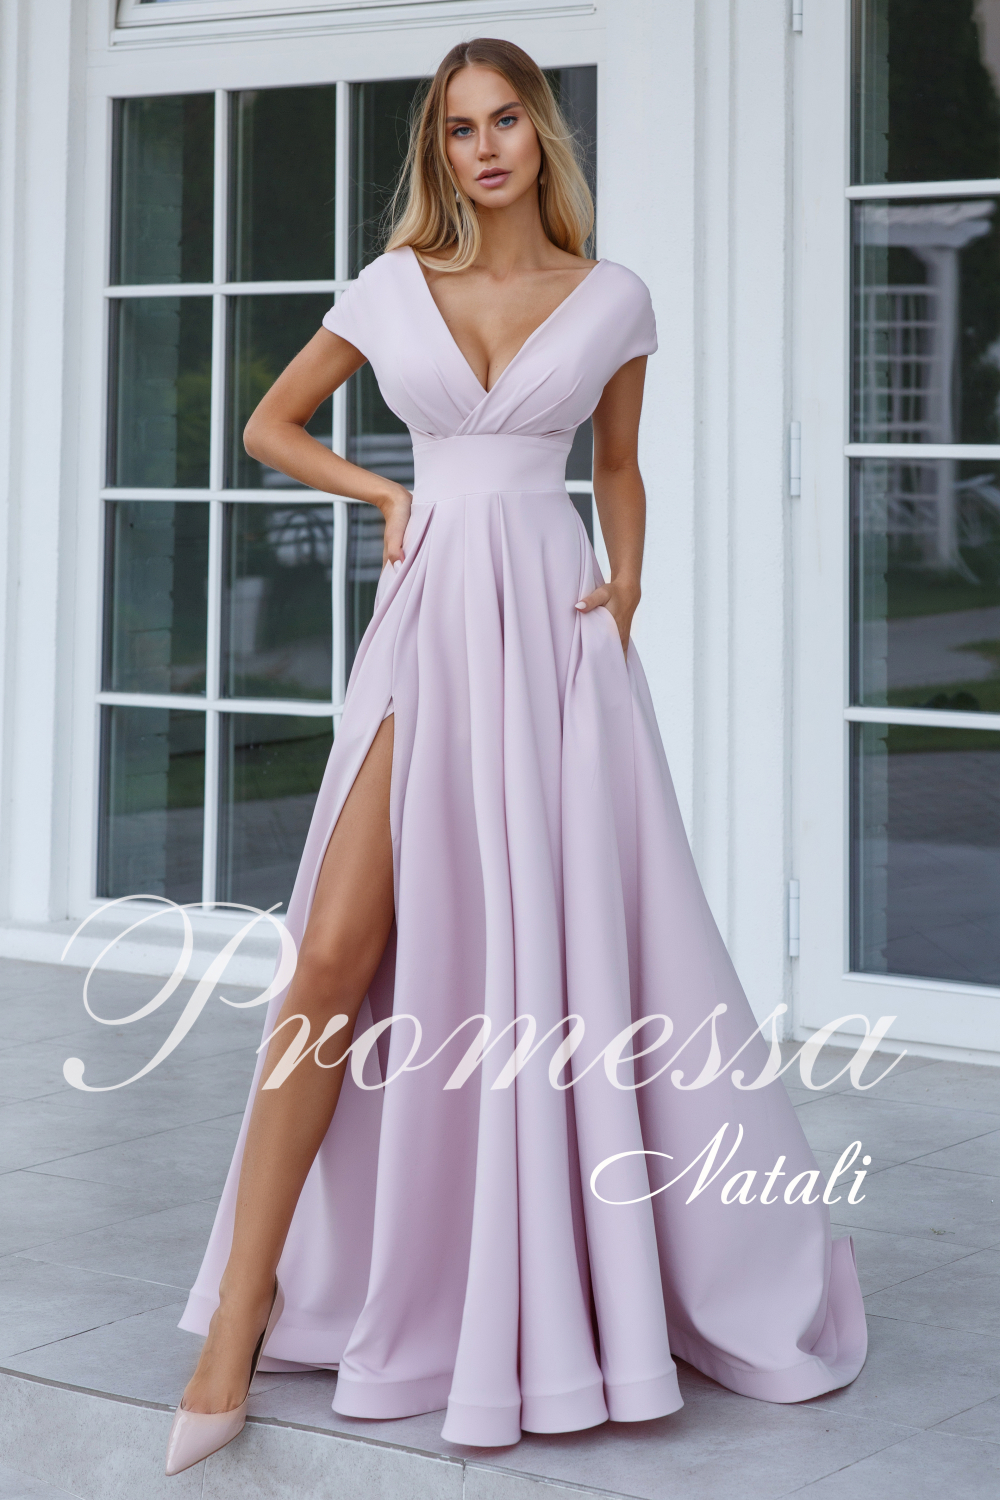 Вечернее платье Натали от Promessa